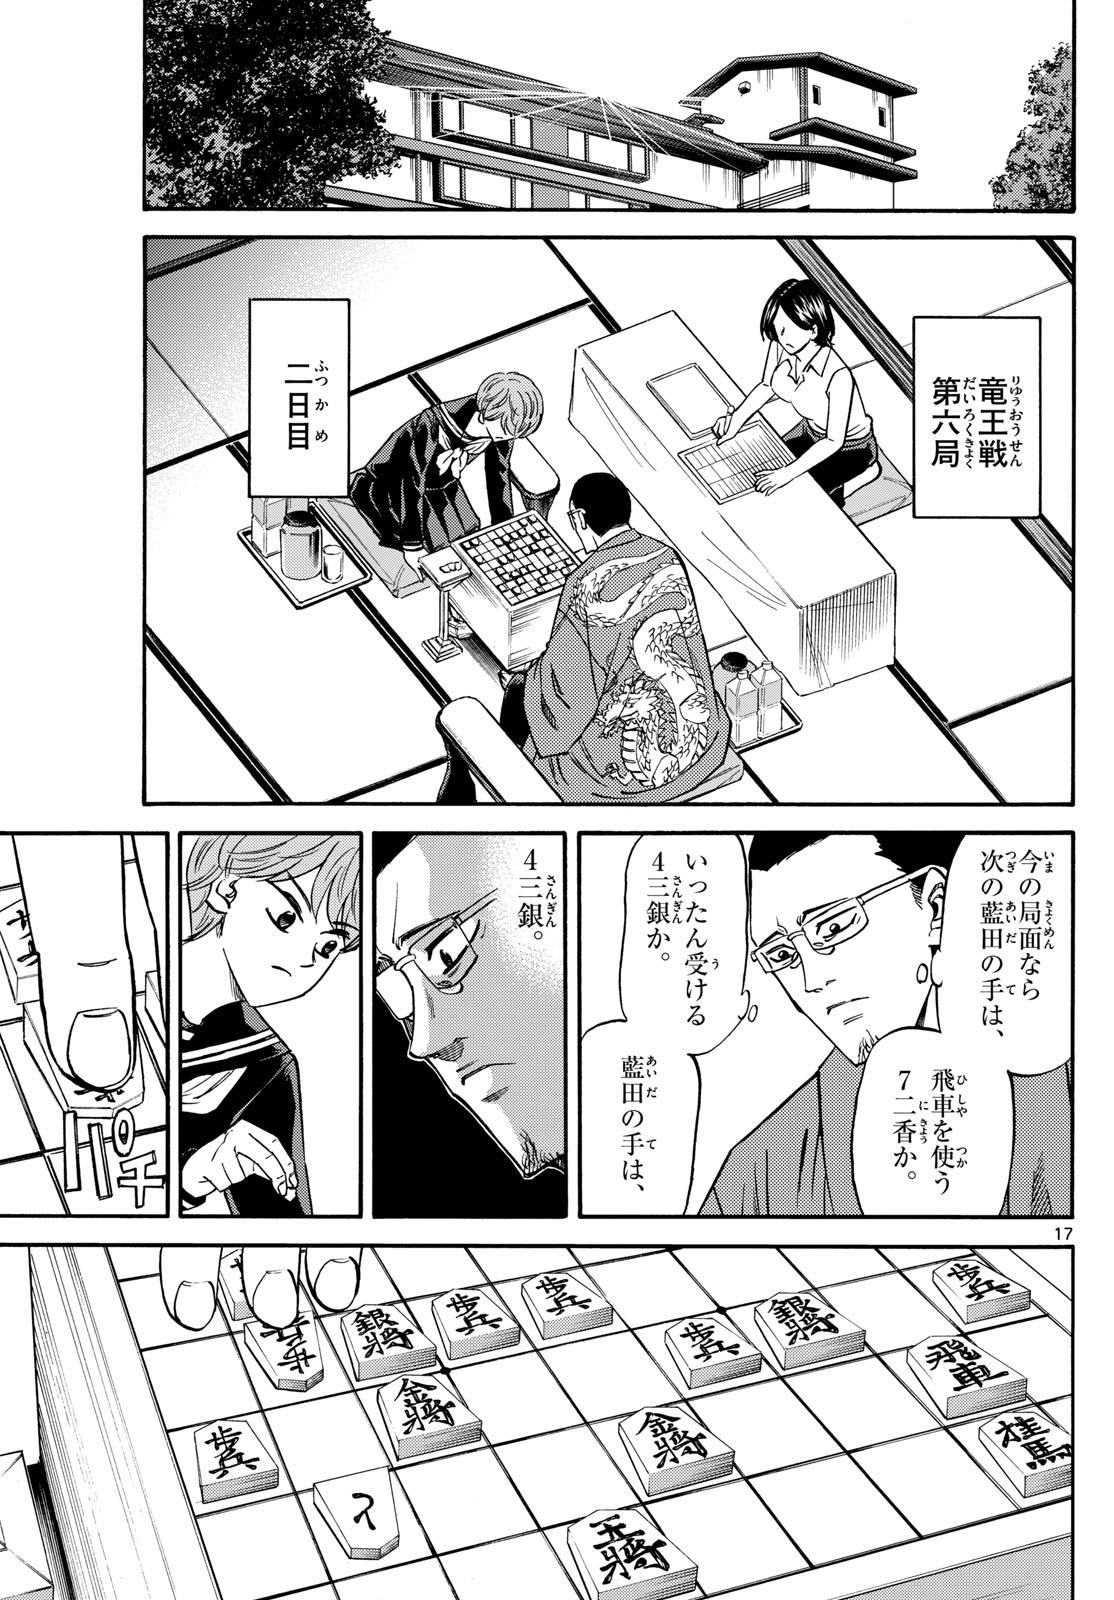 Tatsu to Ichigo - Chapter 169 - Page 17